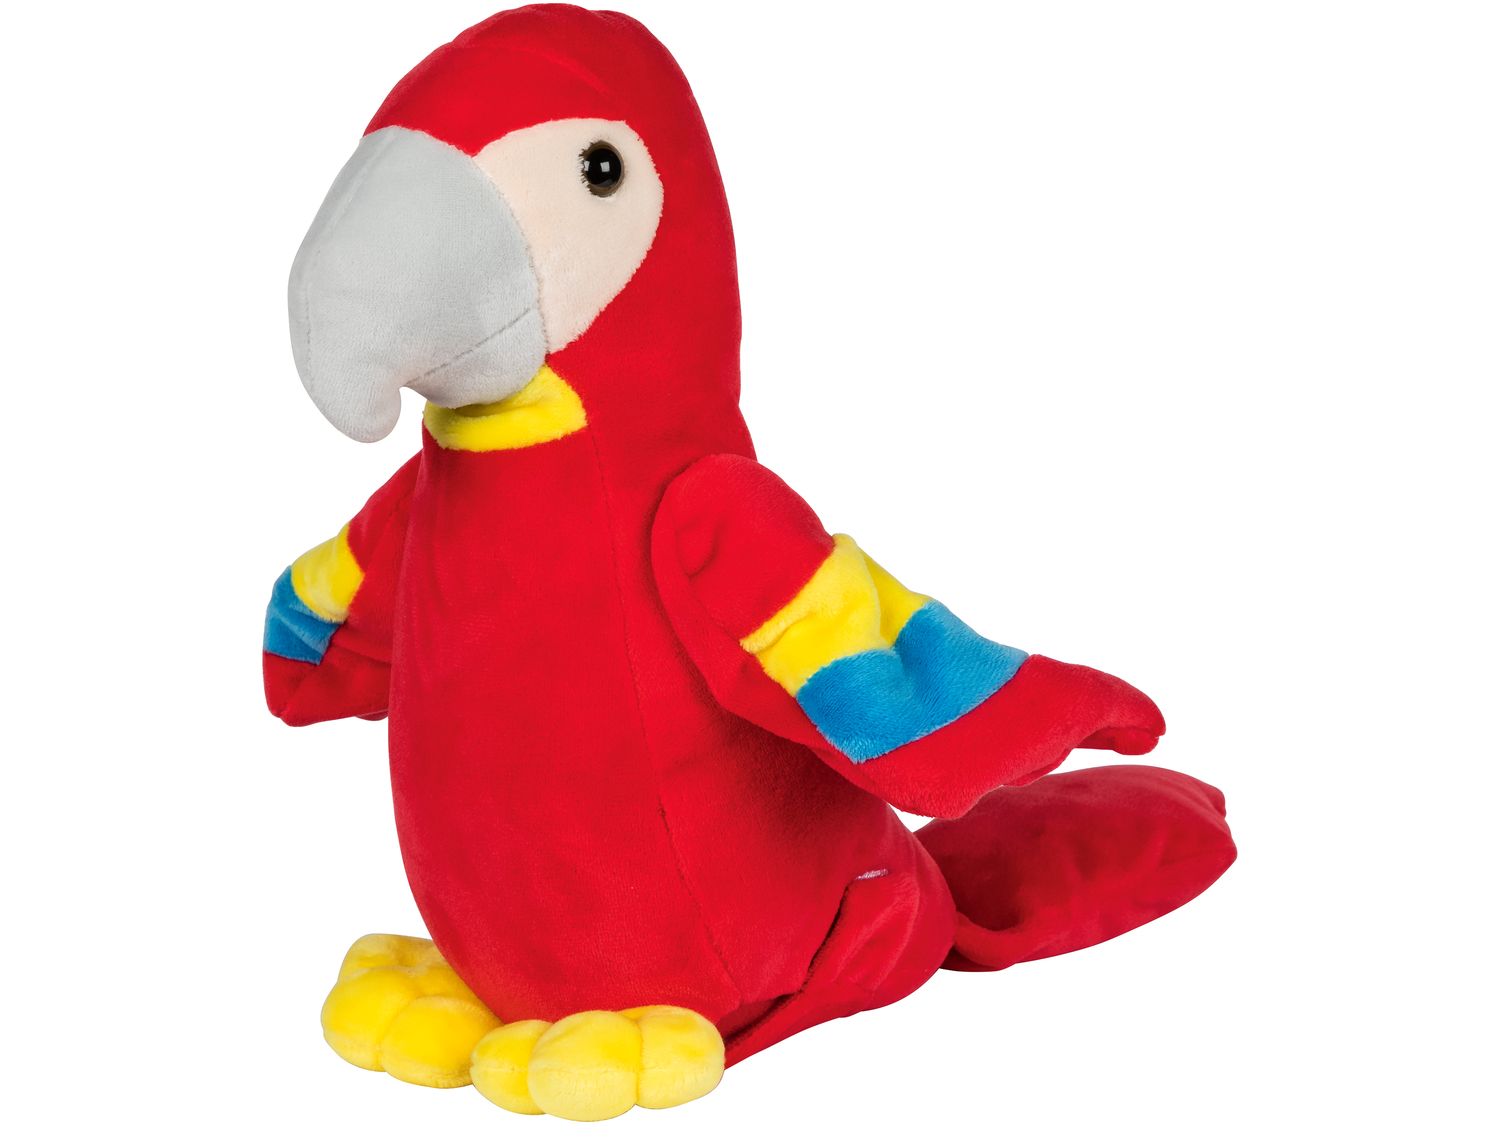 Paplająca papuga Playtive Junior, cena 39,99 PLN 
- powtarzająca słowa papuga ...